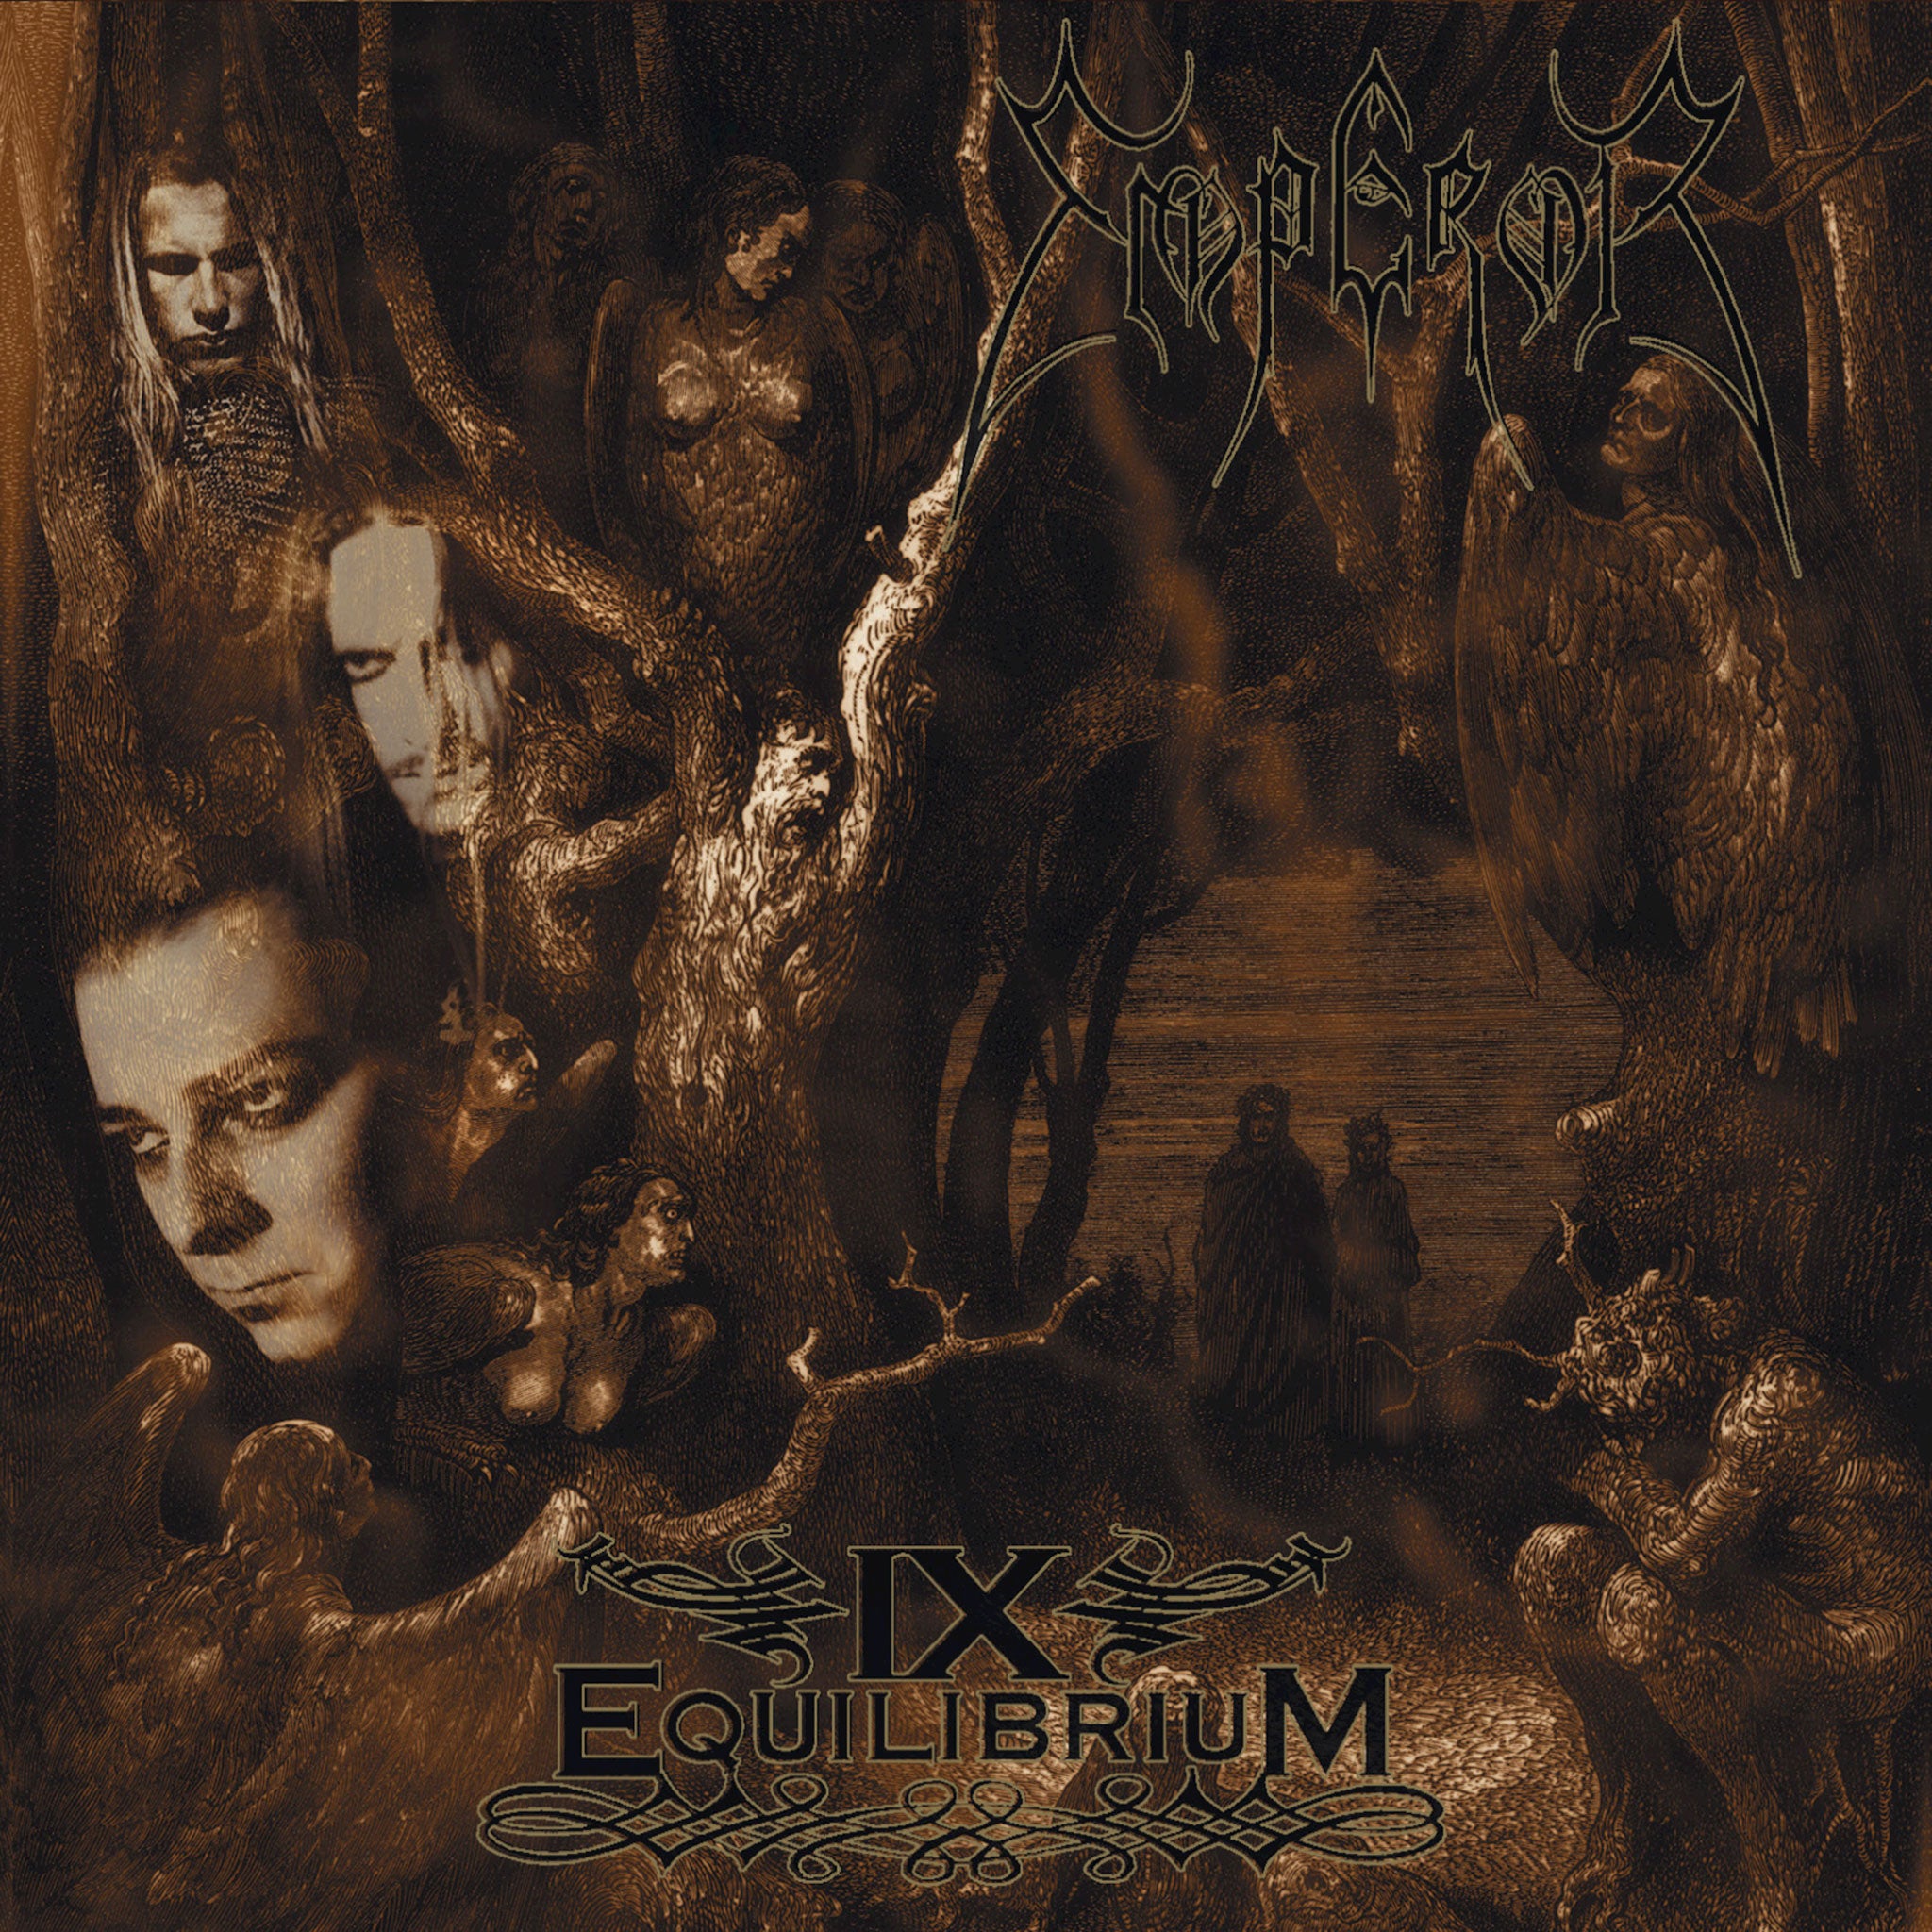 Emperor - IX Equilibrium (2004 Reissue) (CD)